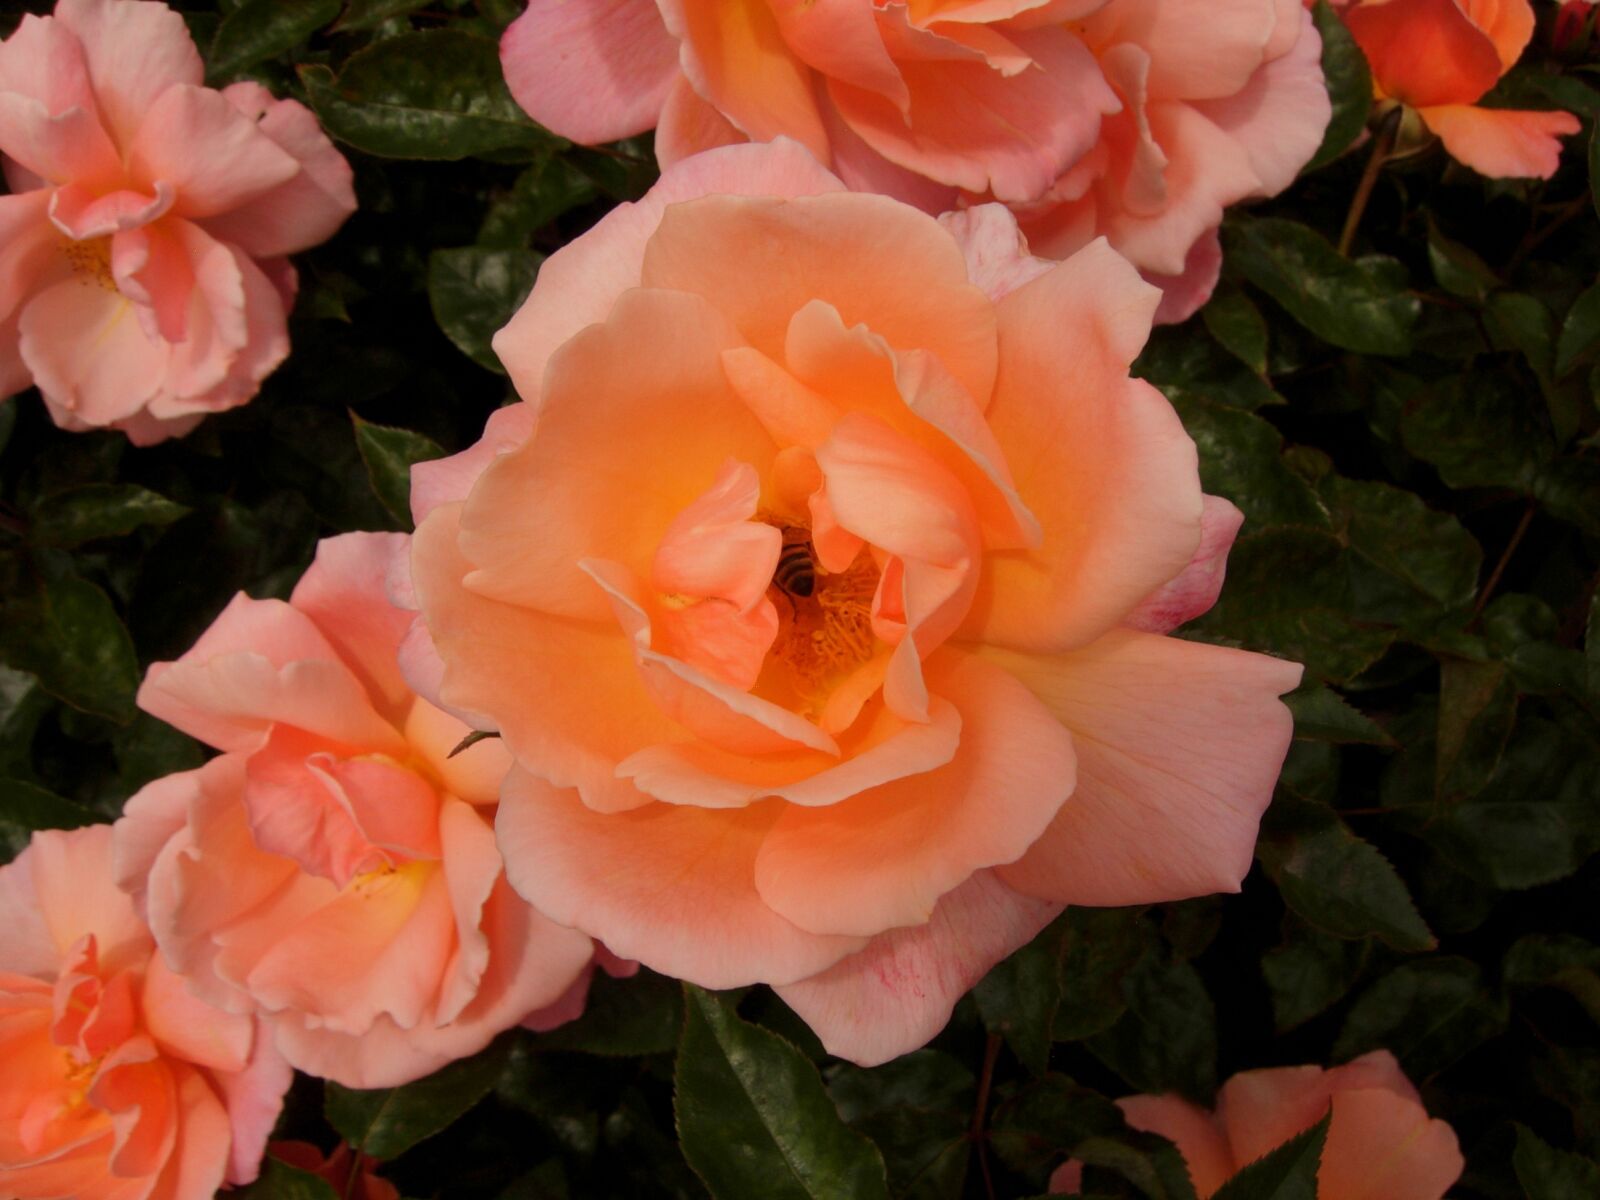 Nikon COOLPIX P4 sample photo. Rose, pink, orange photography